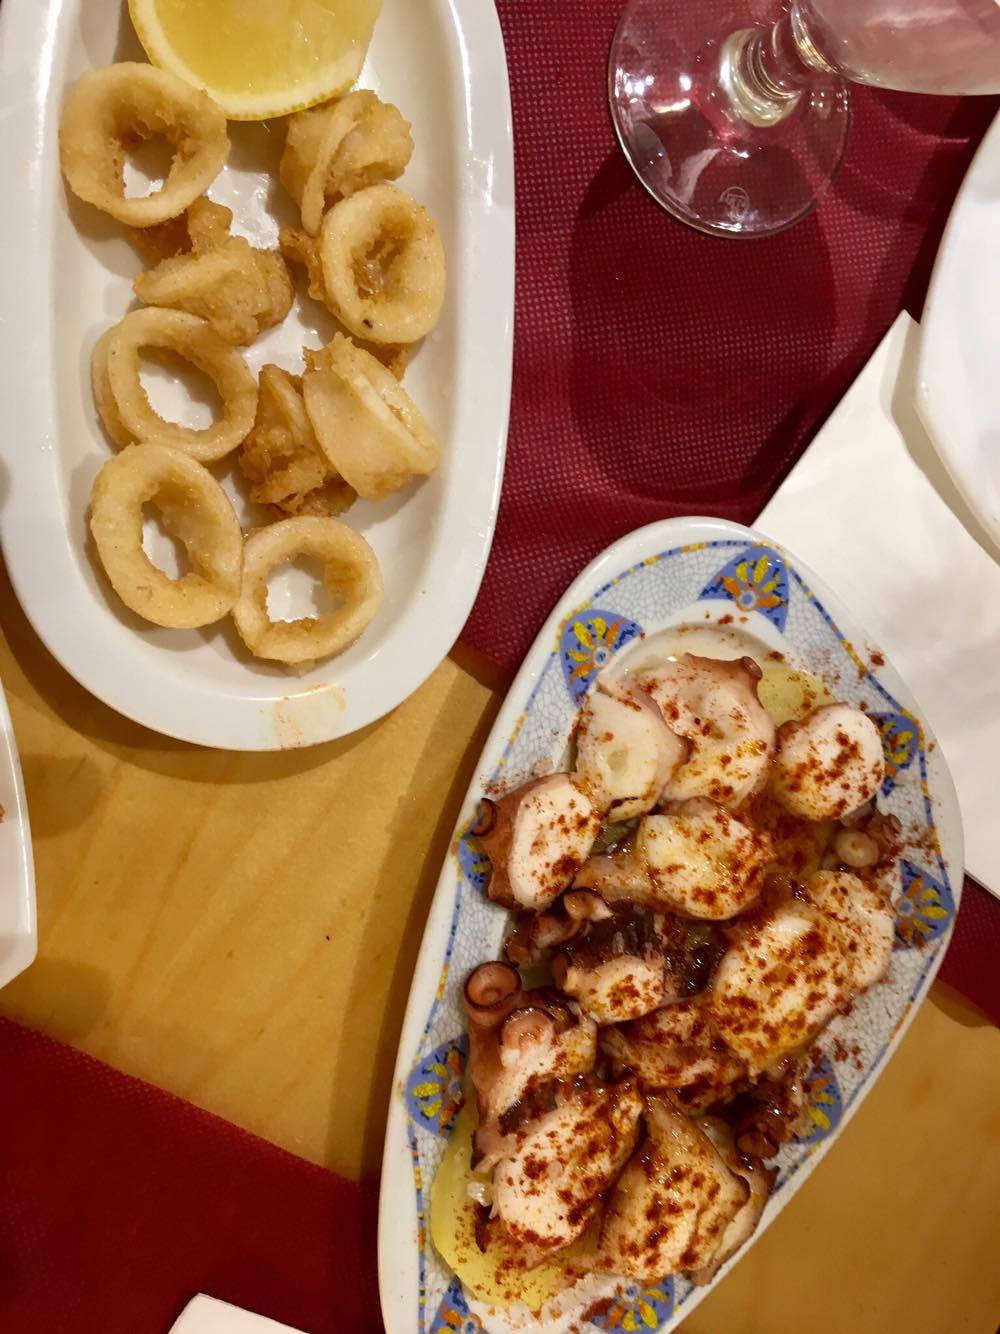 Fried calamari and braised octopus 